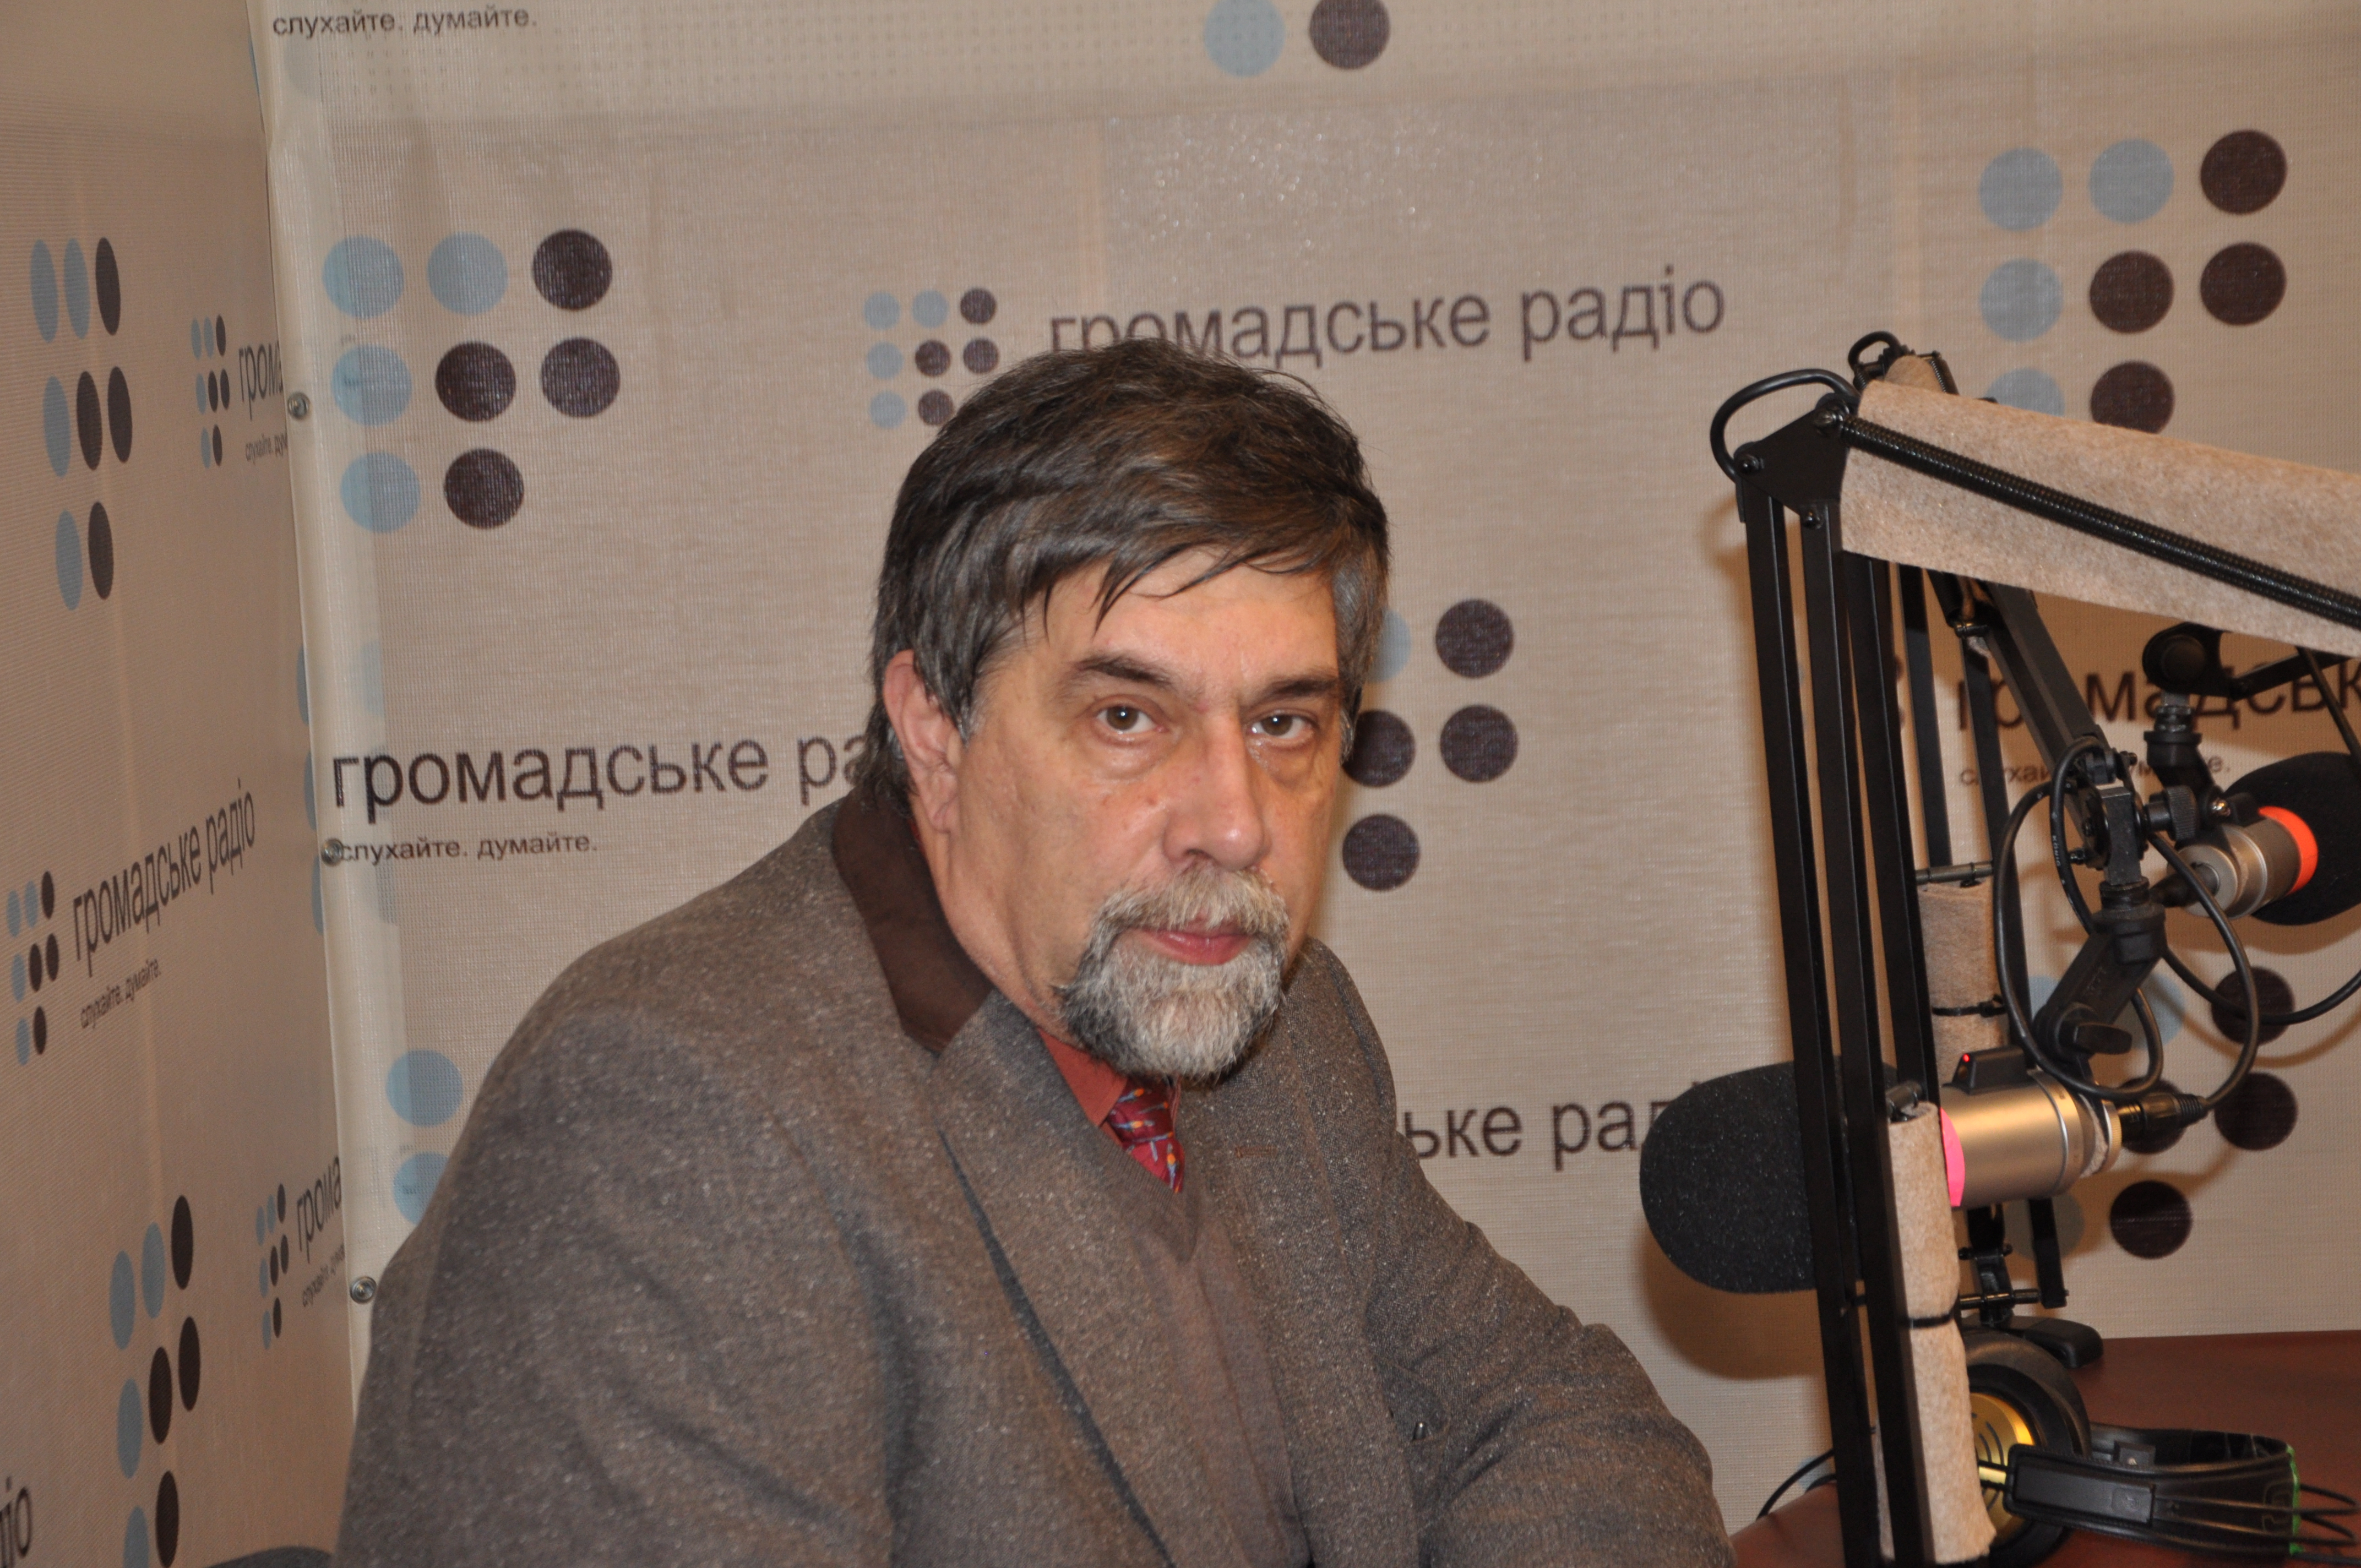 «Разница цен в Донецке и Киеве не больше 70%», — Ярым-Агаев